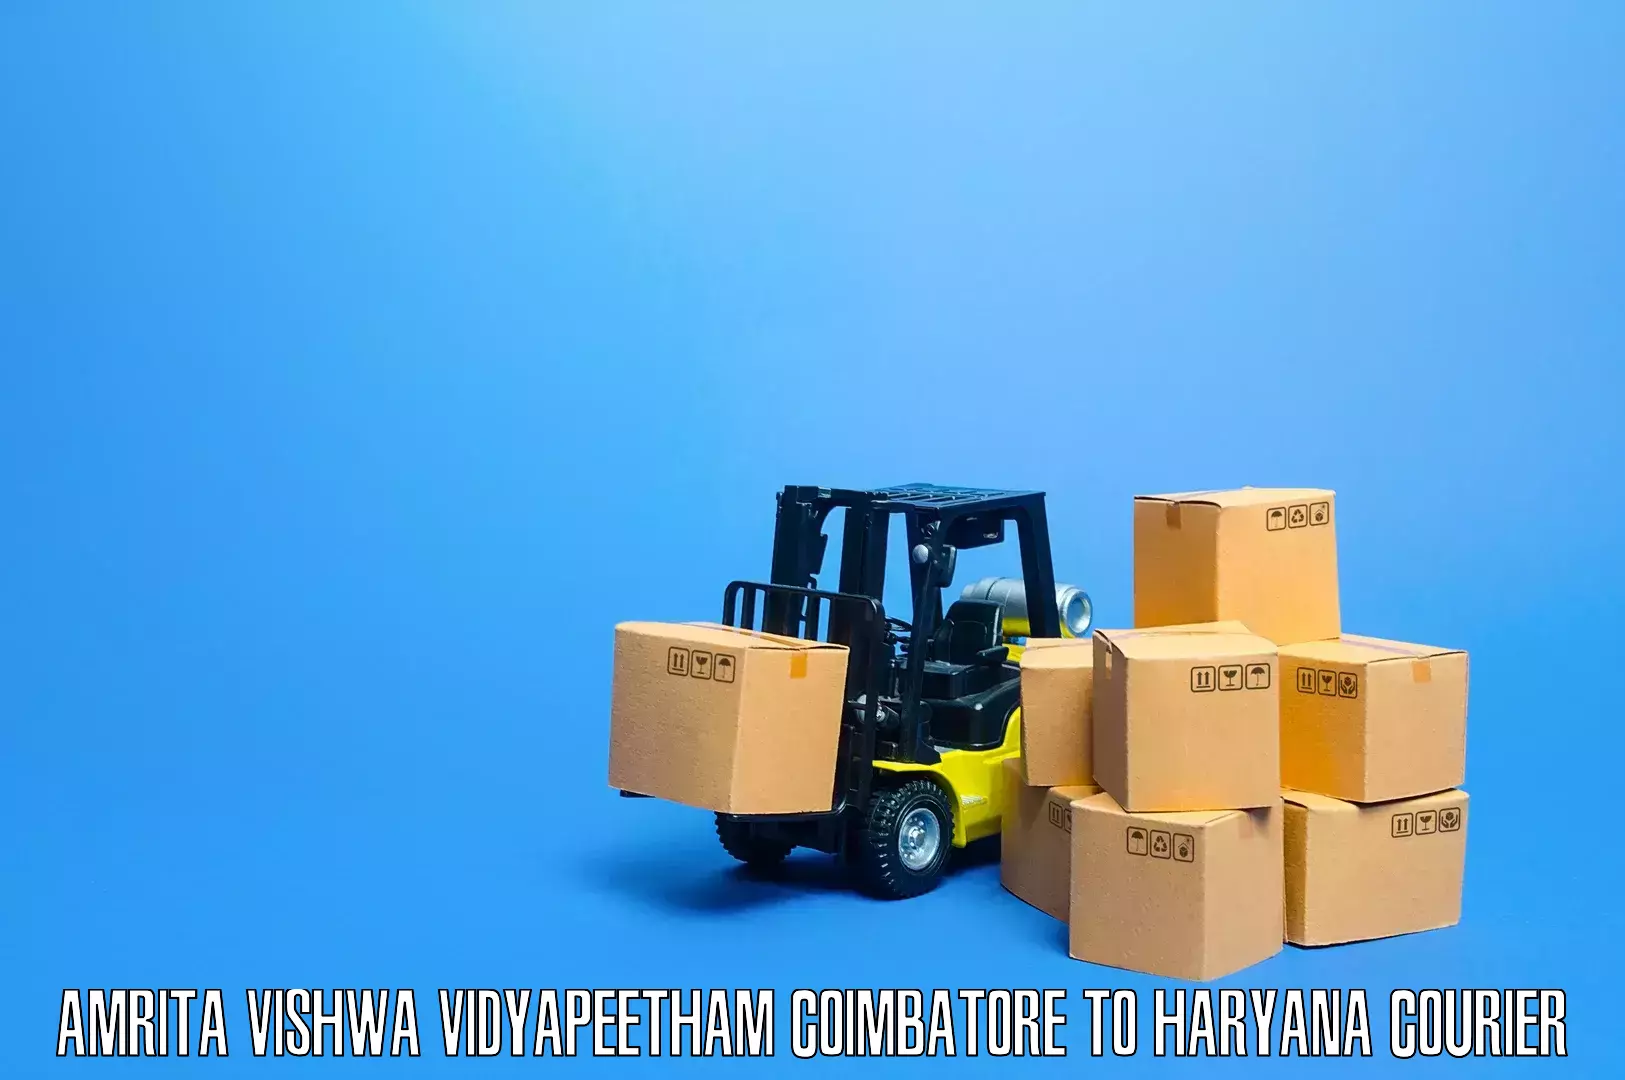 Furniture transport professionals Amrita Vishwa Vidyapeetham Coimbatore to Charkhari